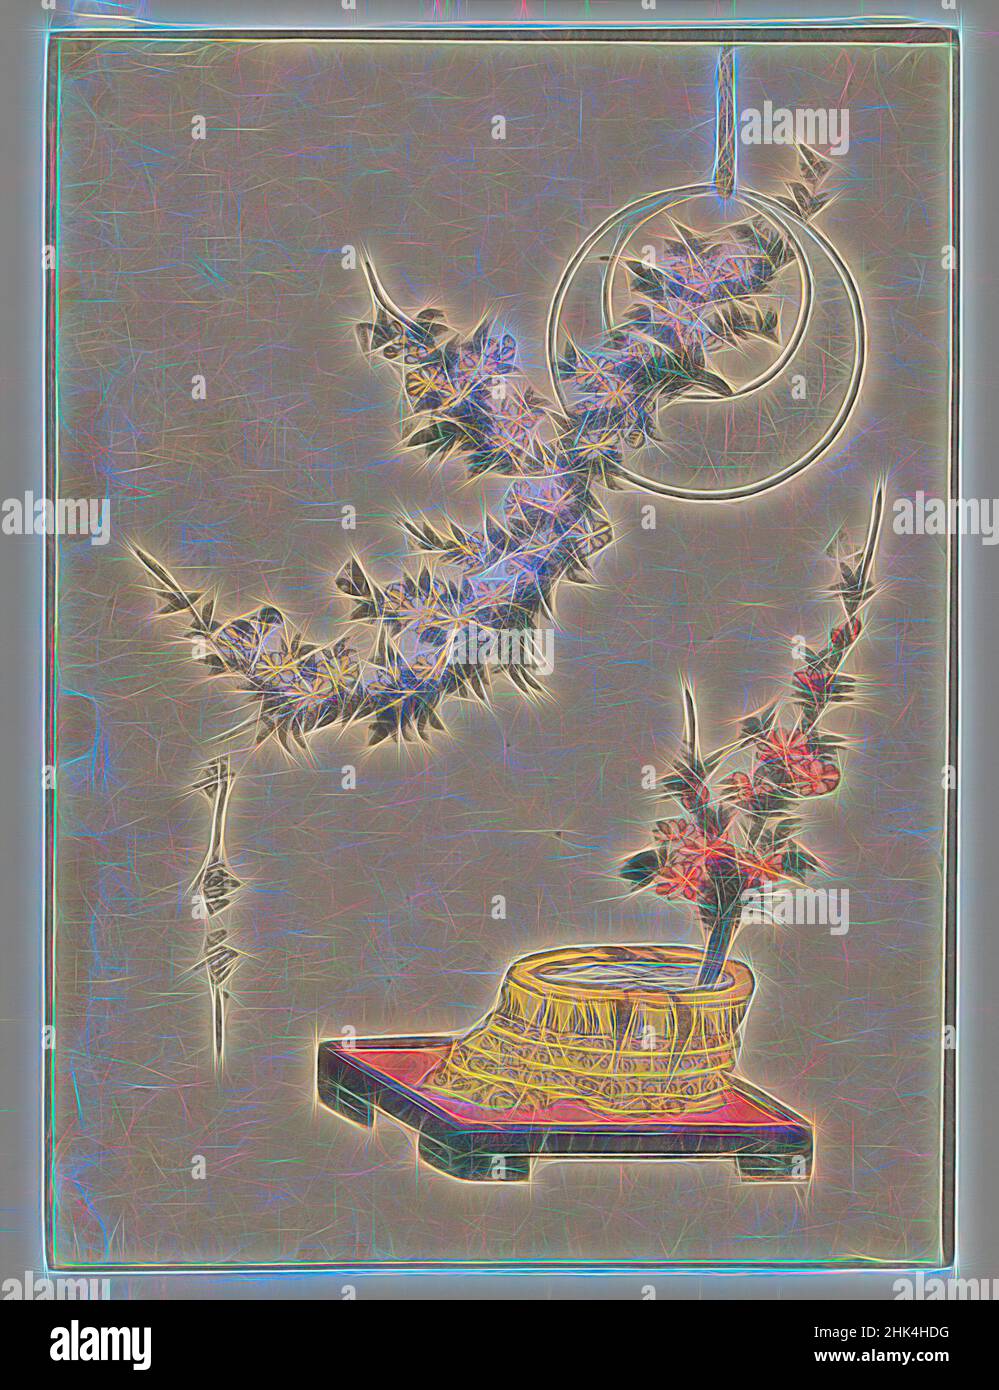 Ispirati da Still Life: Fiori, Kitagawa Utamaro, giapponese, 1753-1806, stampa di blocchi di legno, Giappone, ca. 1804, periodo Edo, immagine: 9 1/8 x 6 11/16 pollici, 23,2 x 17 cm, reinventata da Artotop. L'arte classica reinventata con un tocco moderno. Design di calda e allegra luminosità e di raggi di luce. La fotografia si ispira al surrealismo e al futurismo, abbracciando l'energia dinamica della tecnologia moderna, del movimento, della velocità e rivoluzionando la cultura Foto Stock